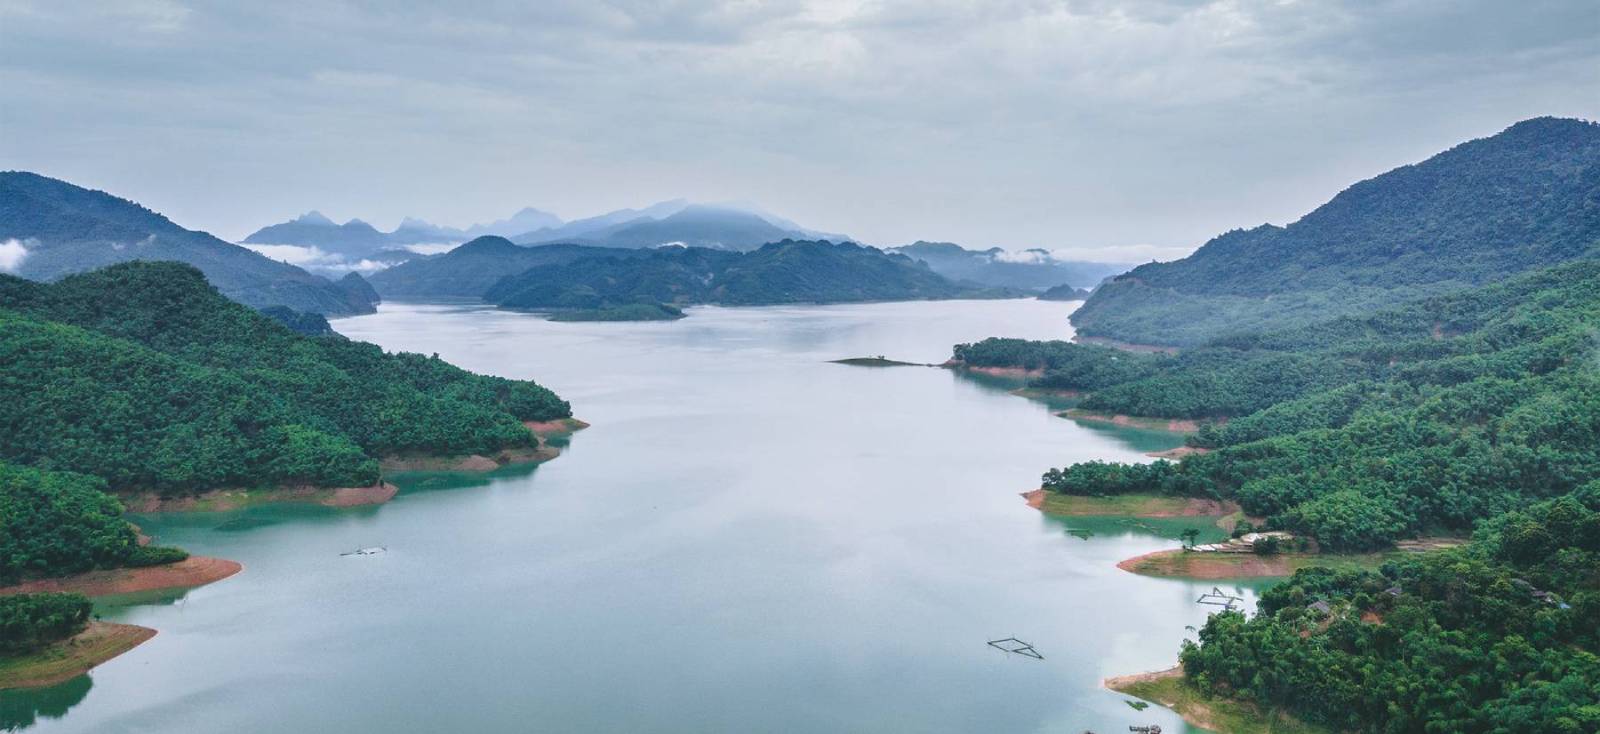 Hoa Binh Lake